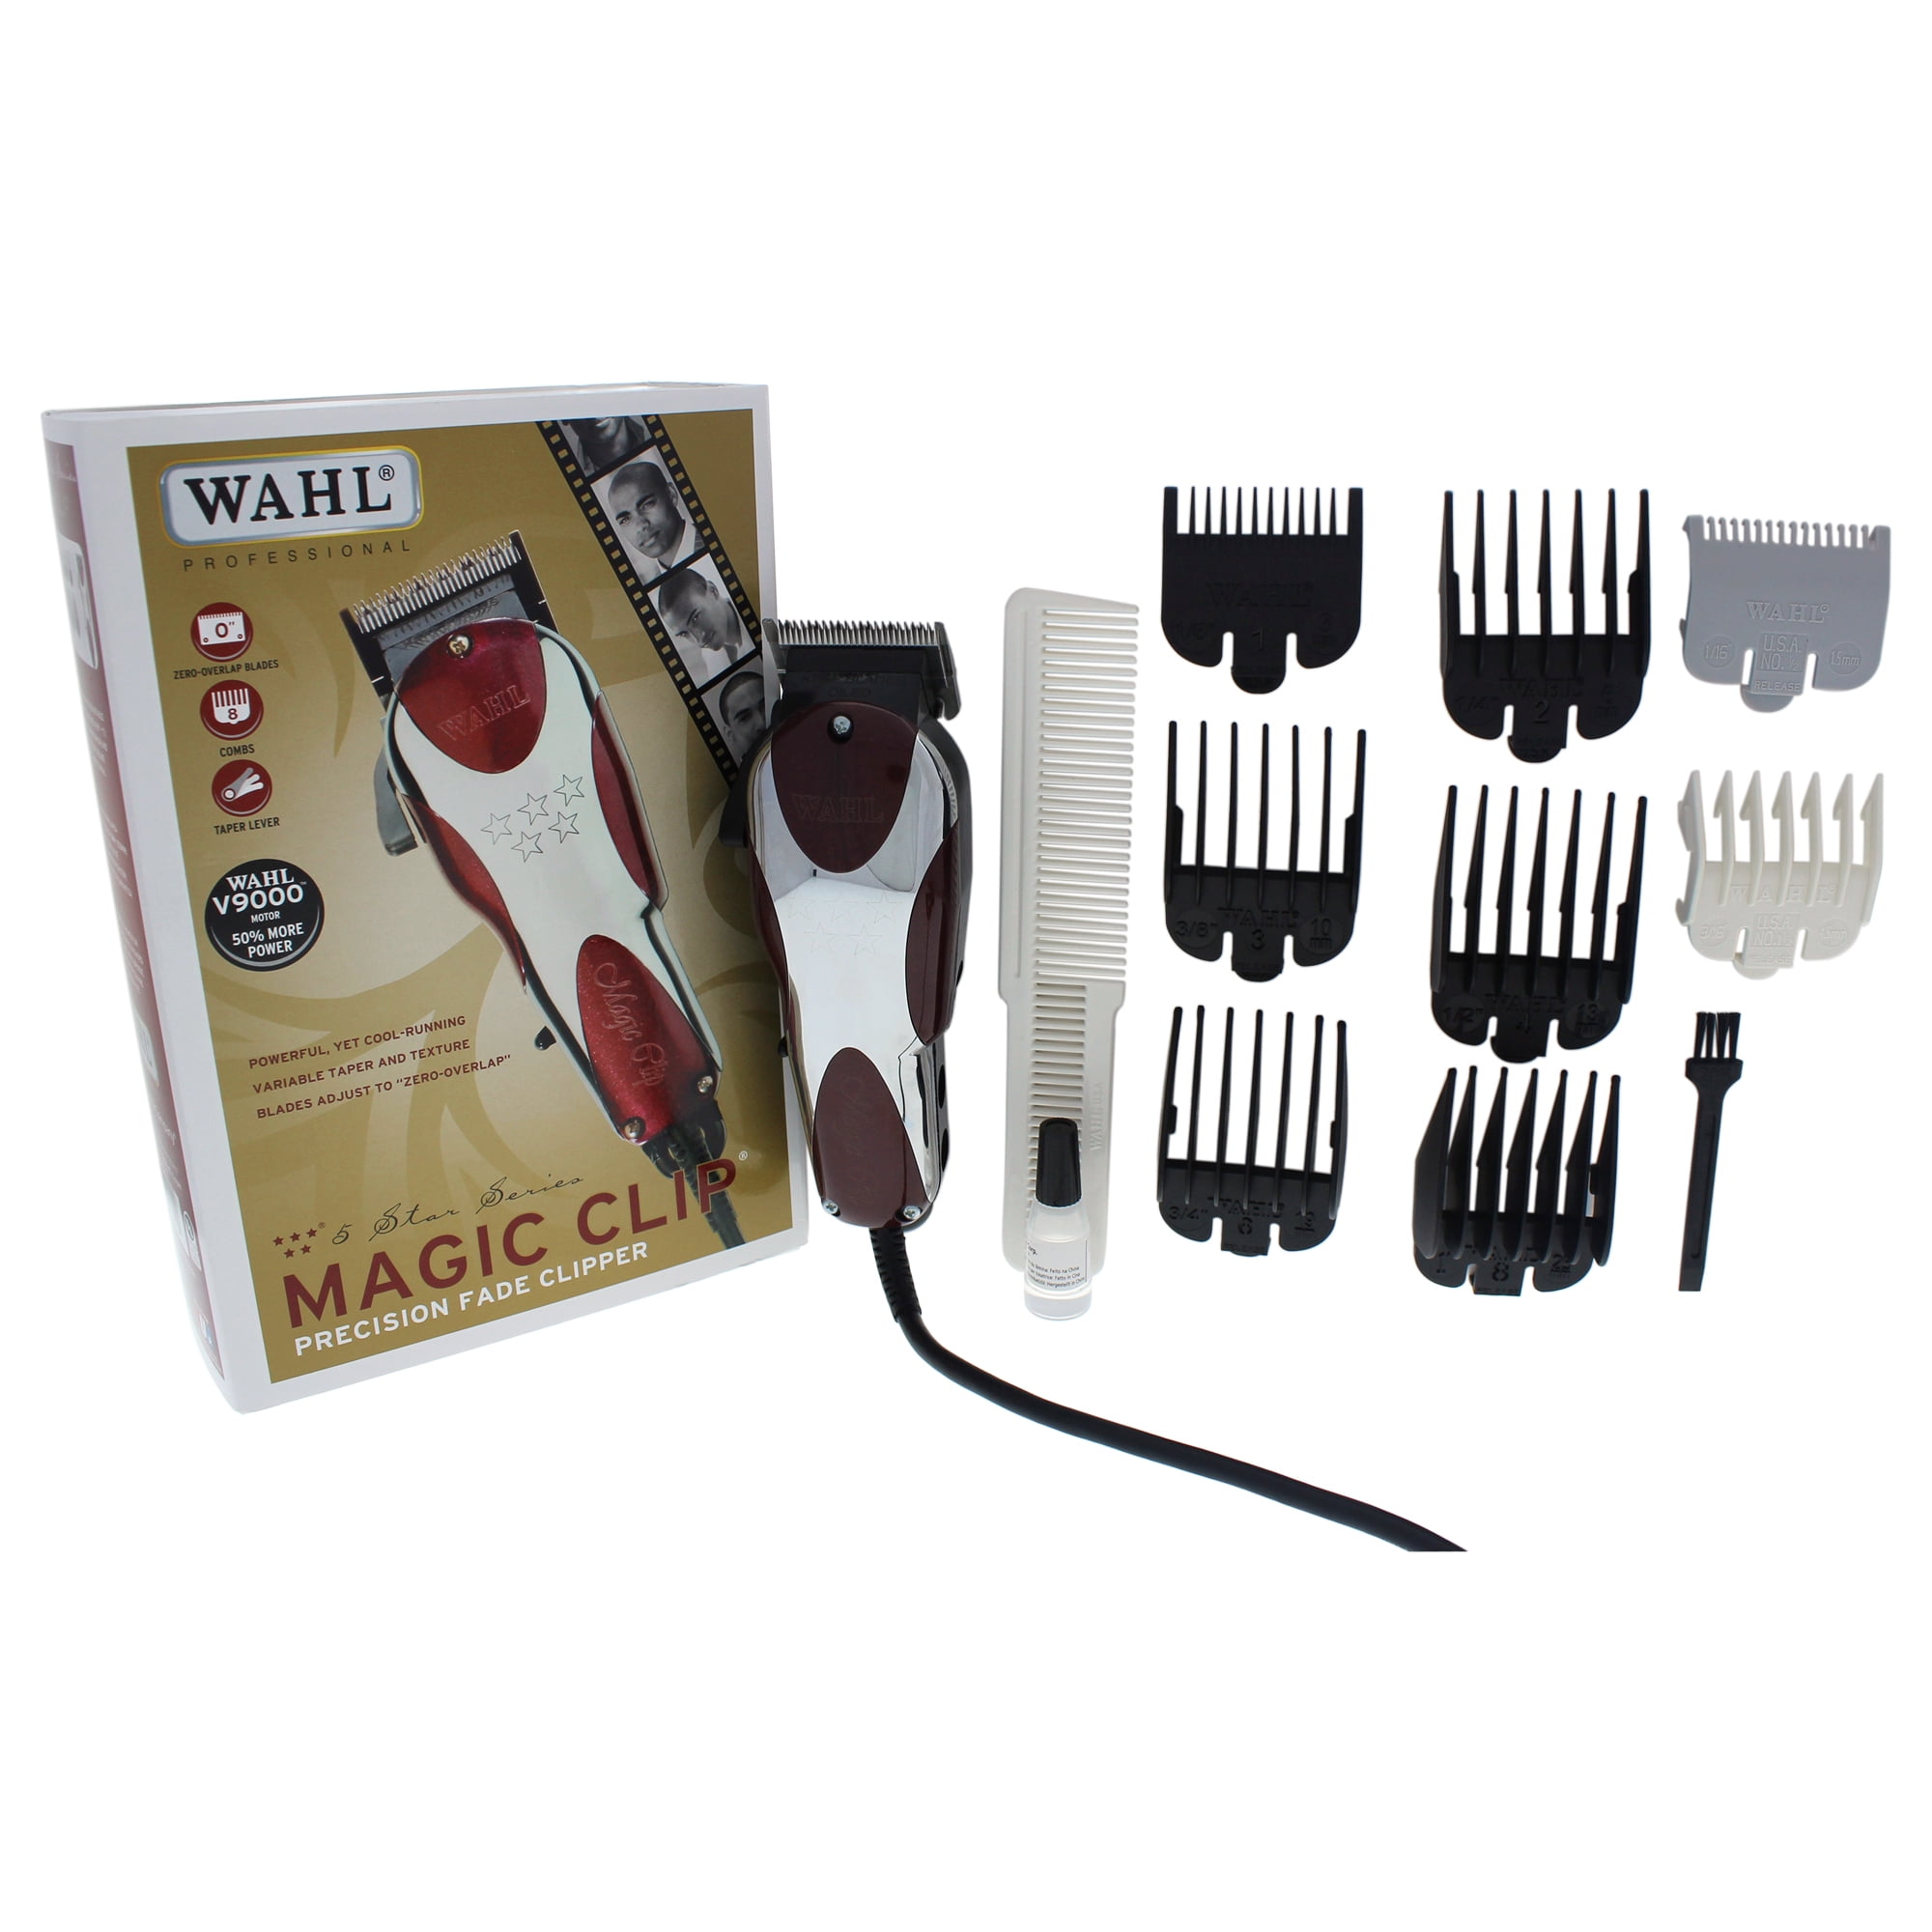 wahl 5 star magic clip 8451